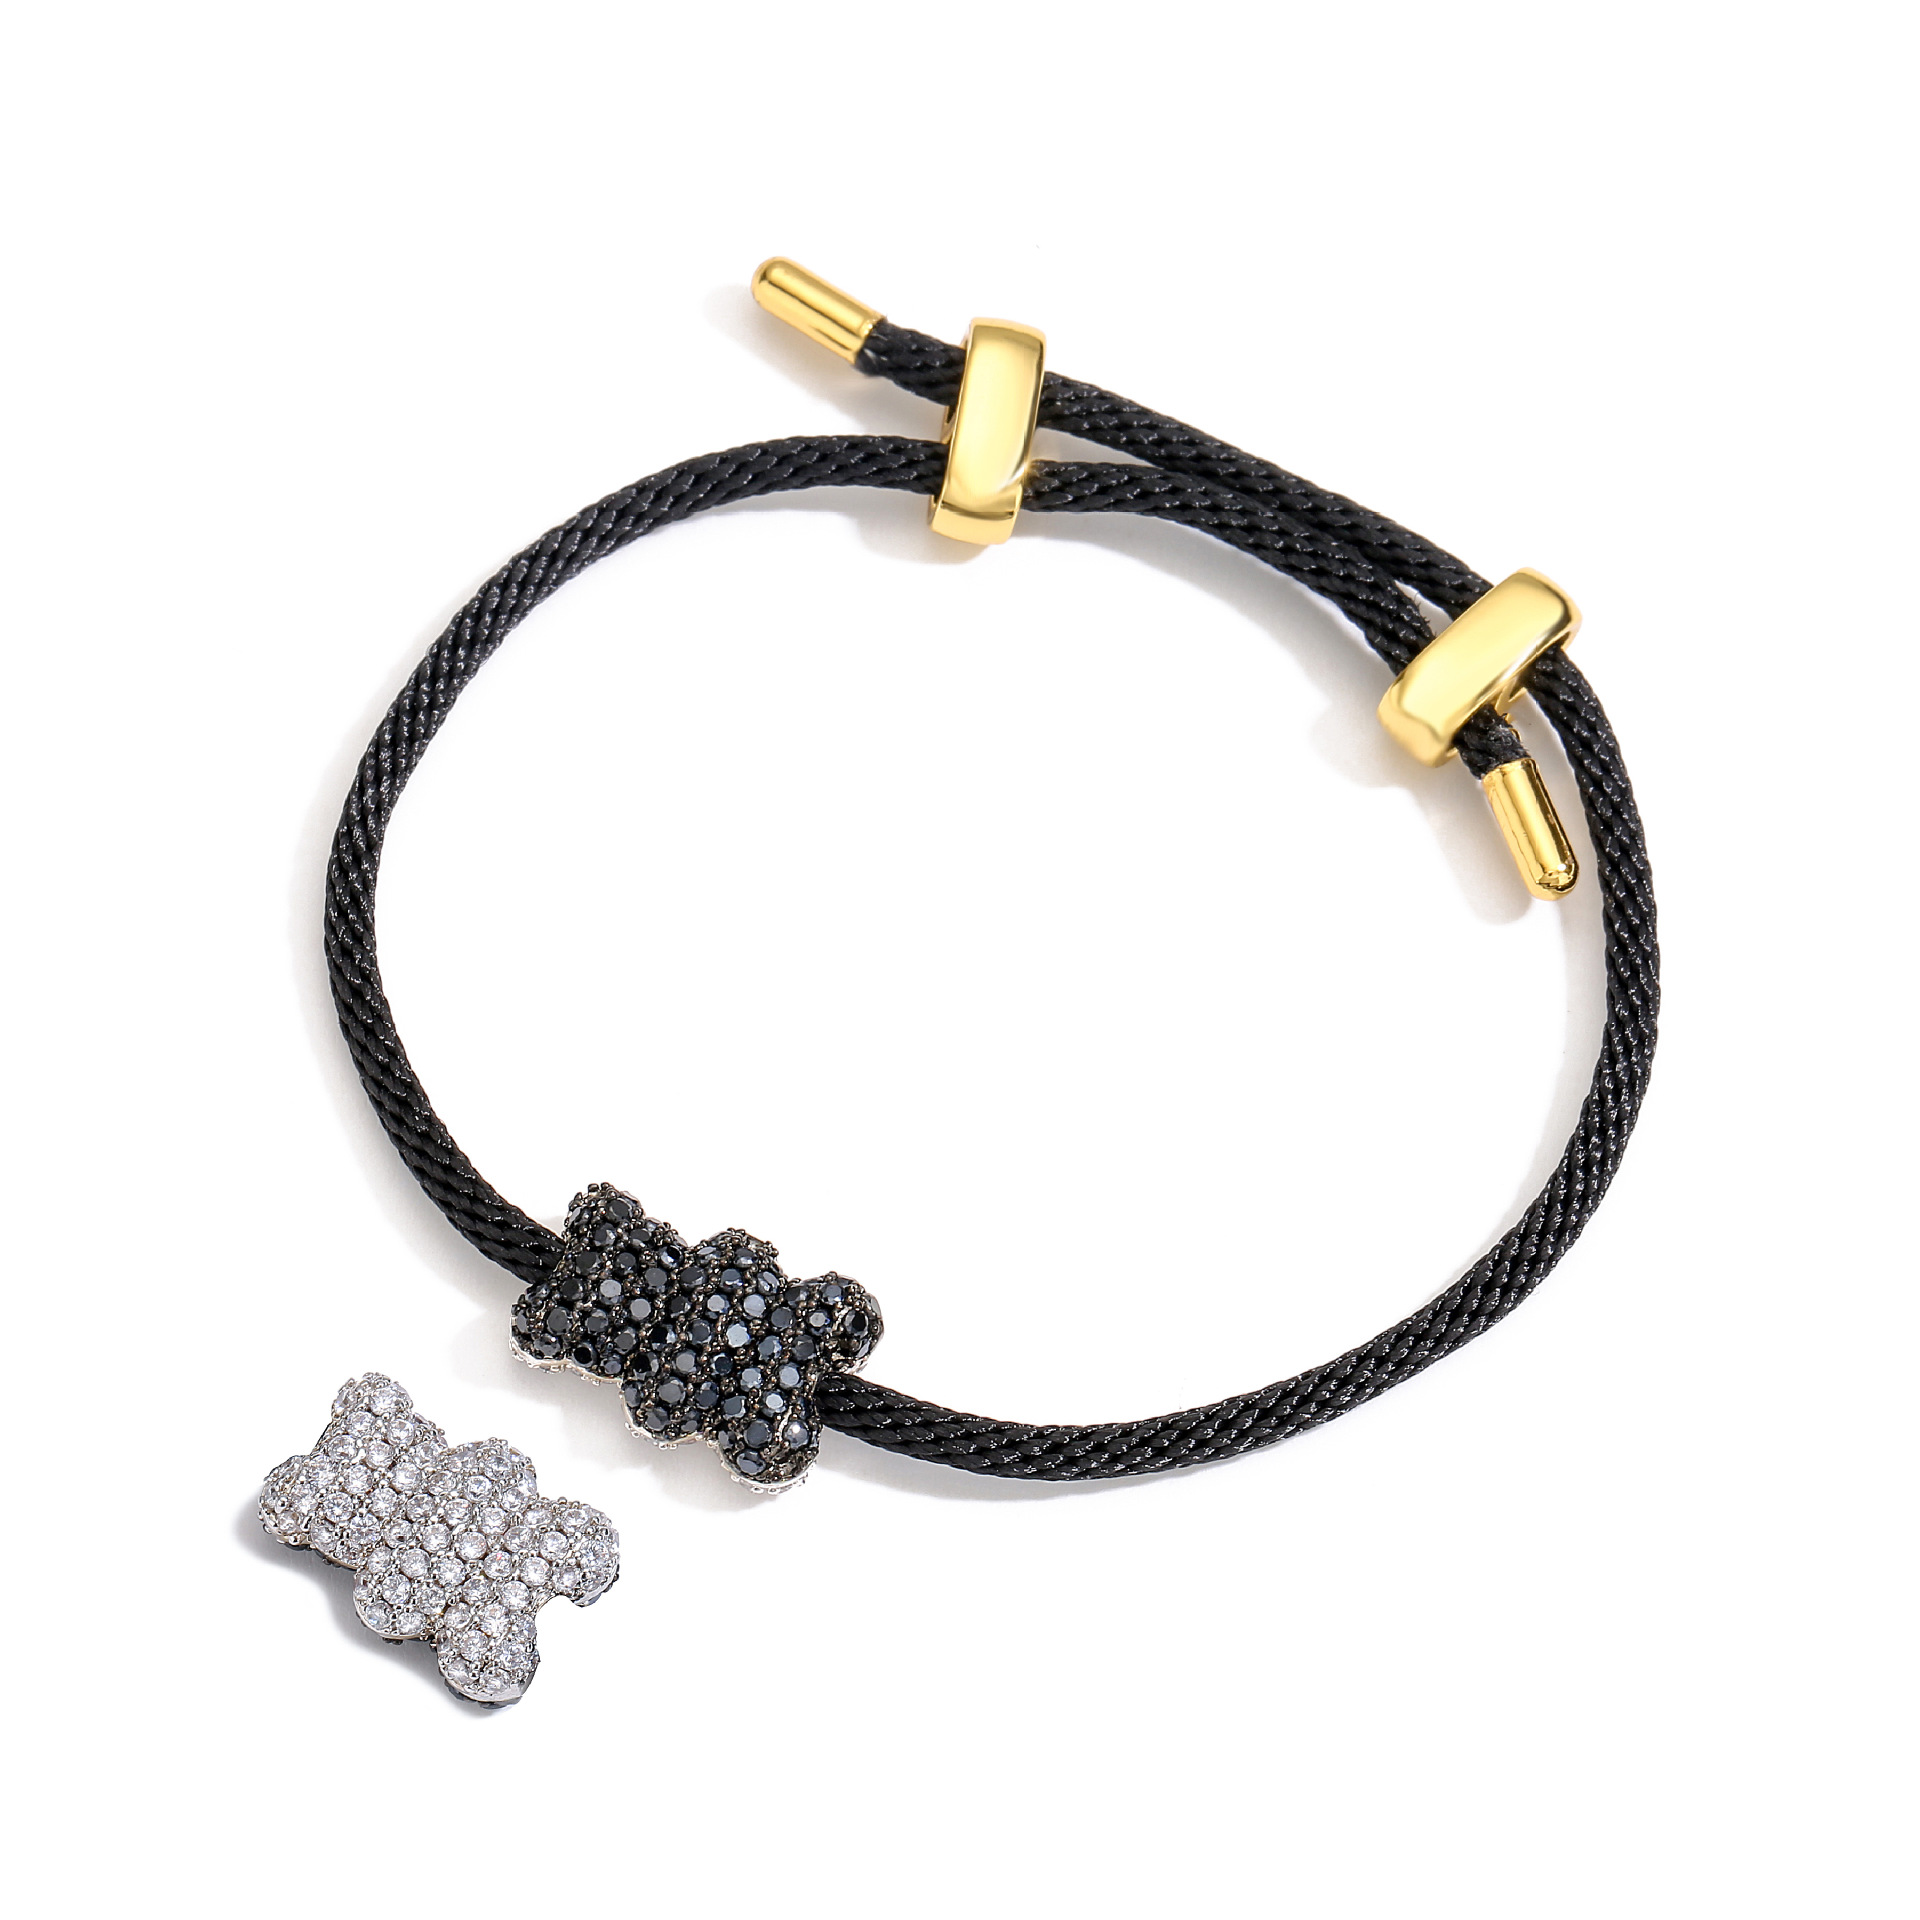 4:Black bracelet